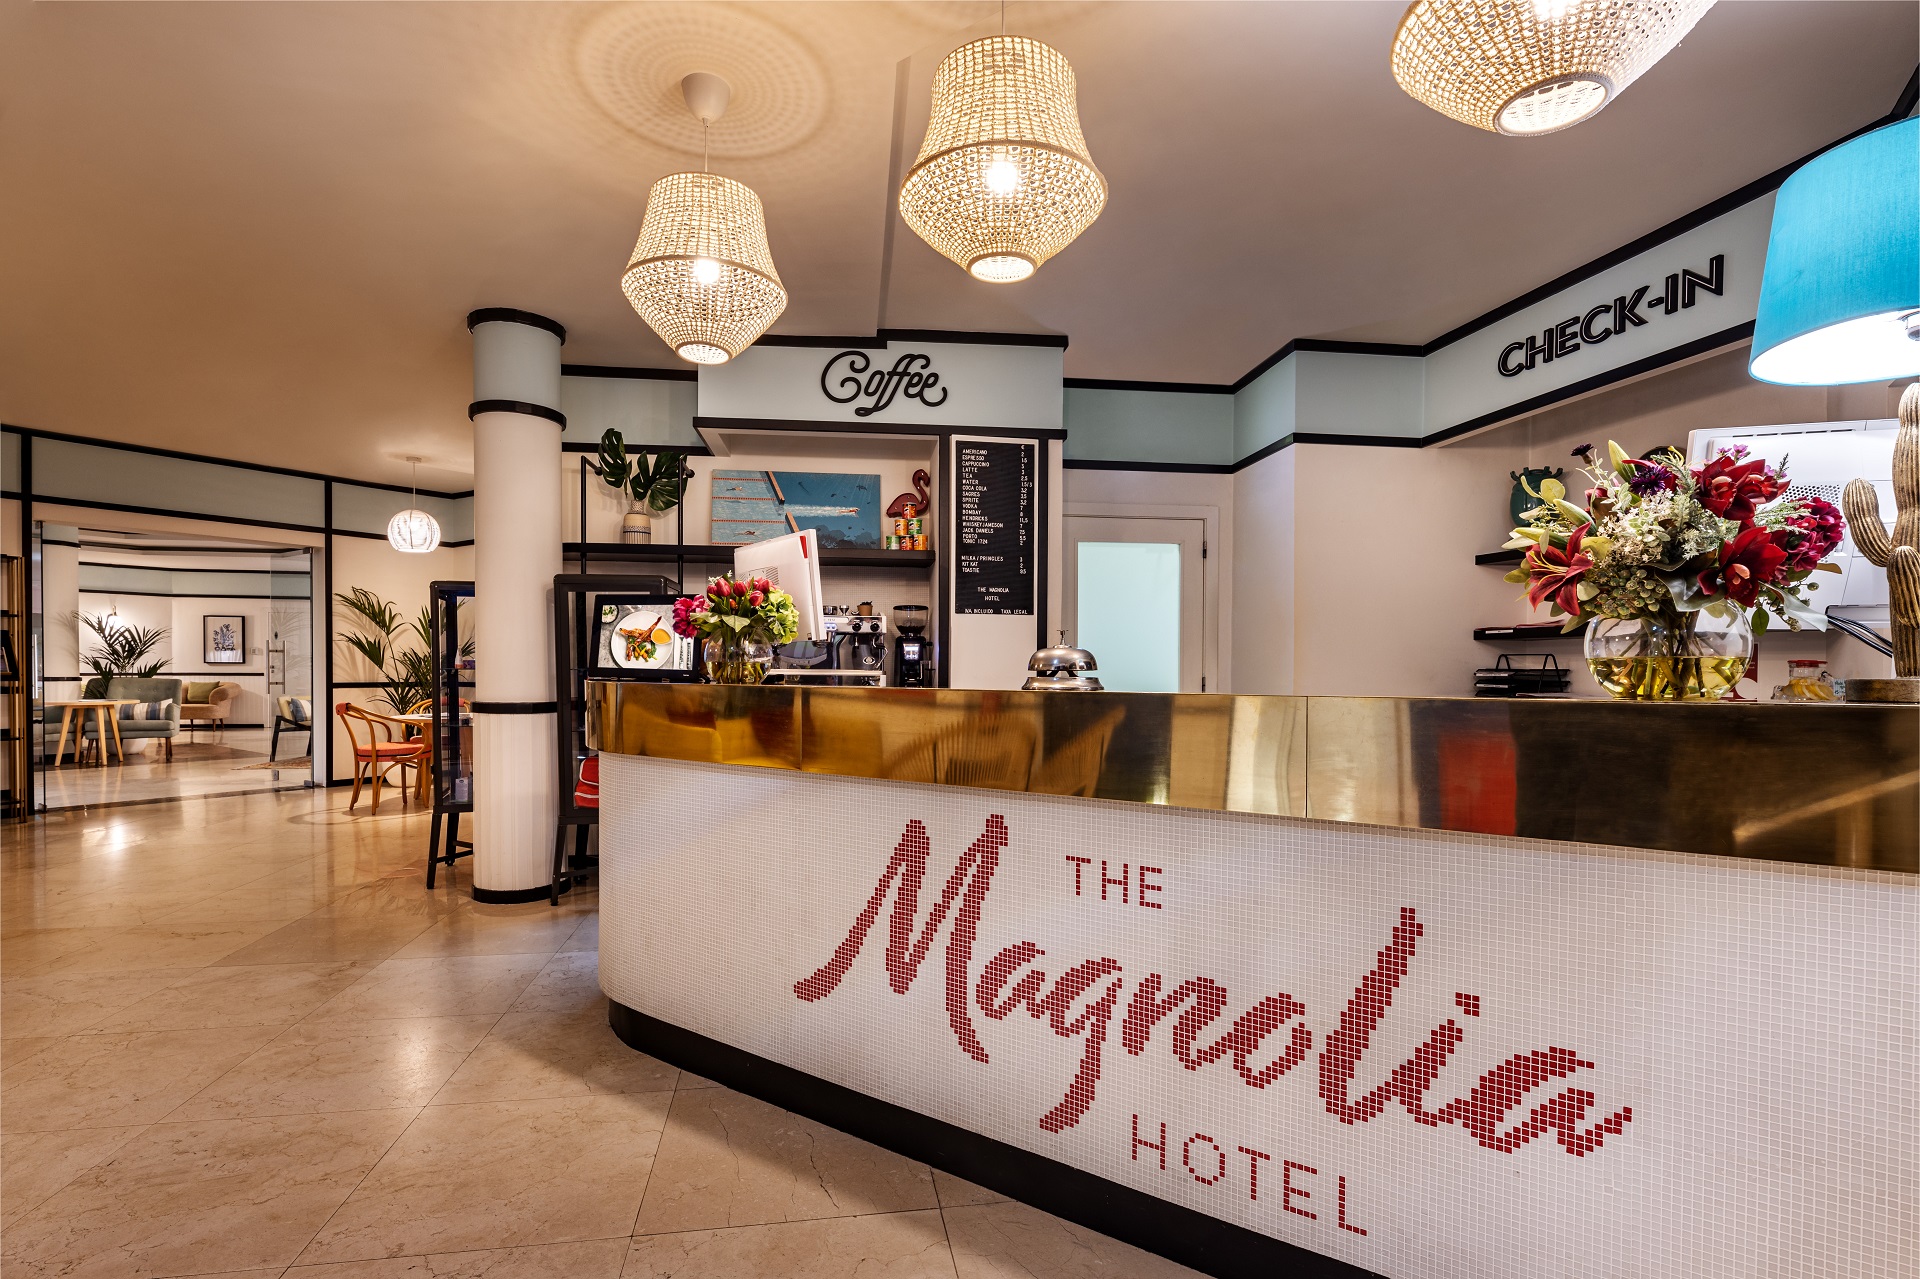 Quinta do Lago Resort | Magnolia Hotel